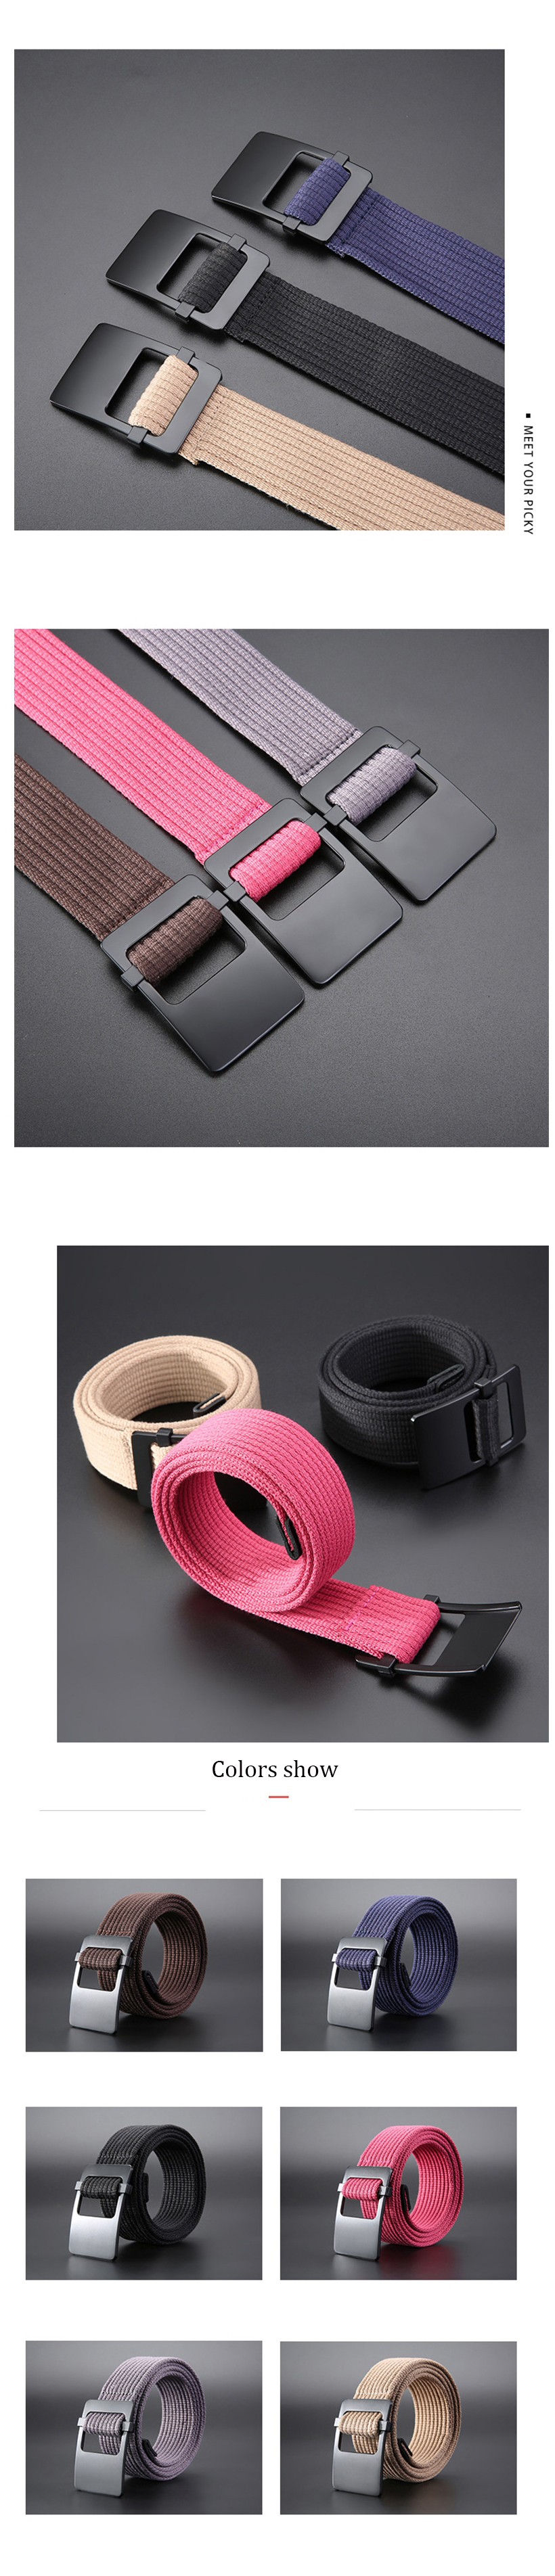 ZANLURE-120cm-Adjustable-Canvas-Tactical-Belt-Leisure-Waist-Belts-with-Zinc-Alloy-Buckle-1568913-3